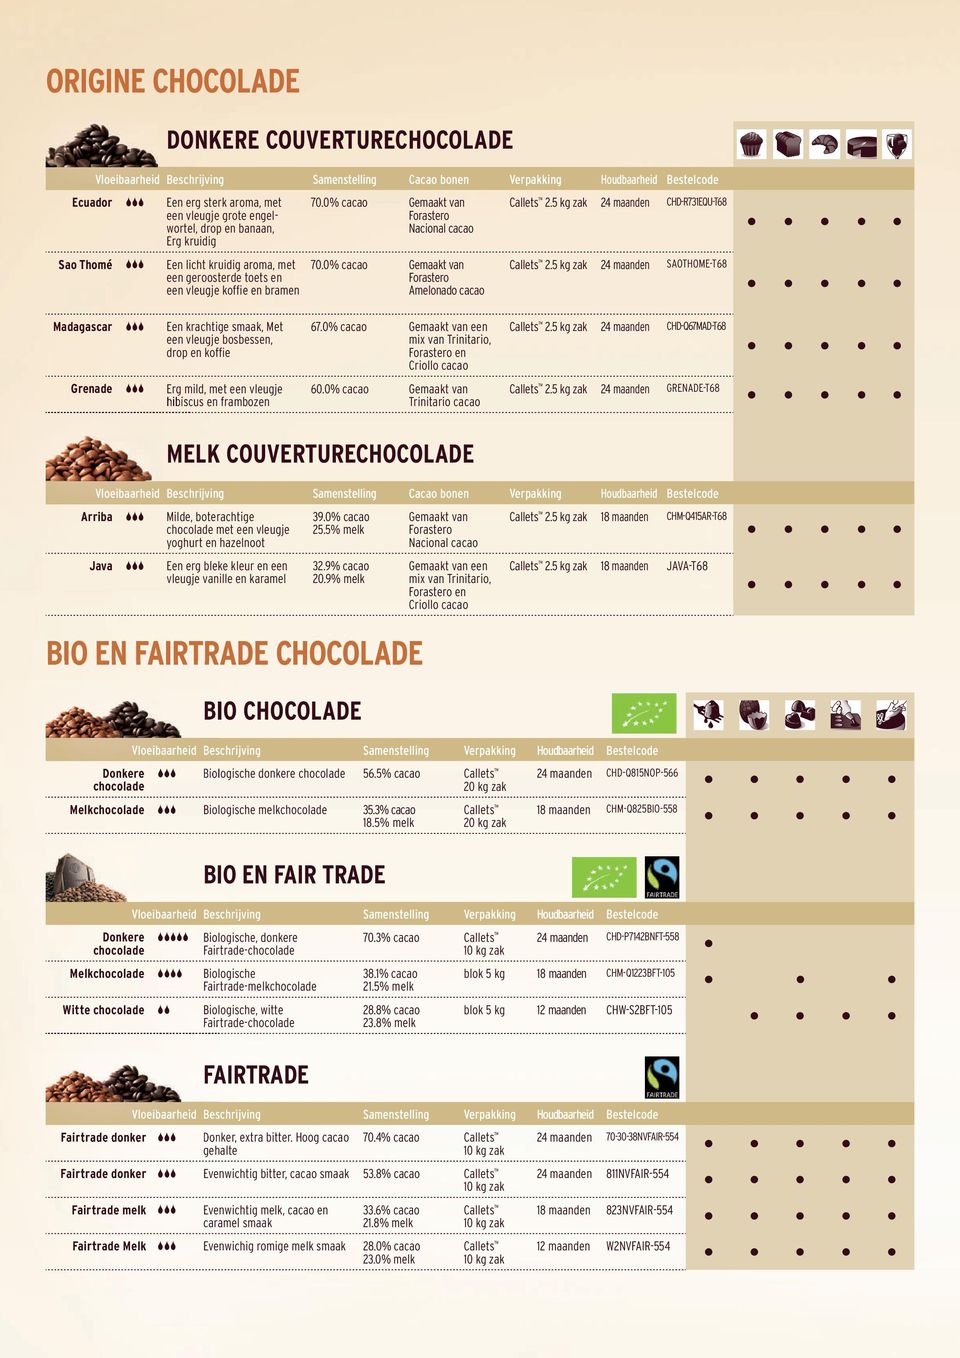 0% cacao Gemaakt van Forastero Amelonado cacao zak 24 maanden CHD-R731EQU-T68 zak 24 maanden SAOTHOME-T68 Madagascar Een krachtige smaak, Met een vleugje bosbessen, drop en koffie 67.